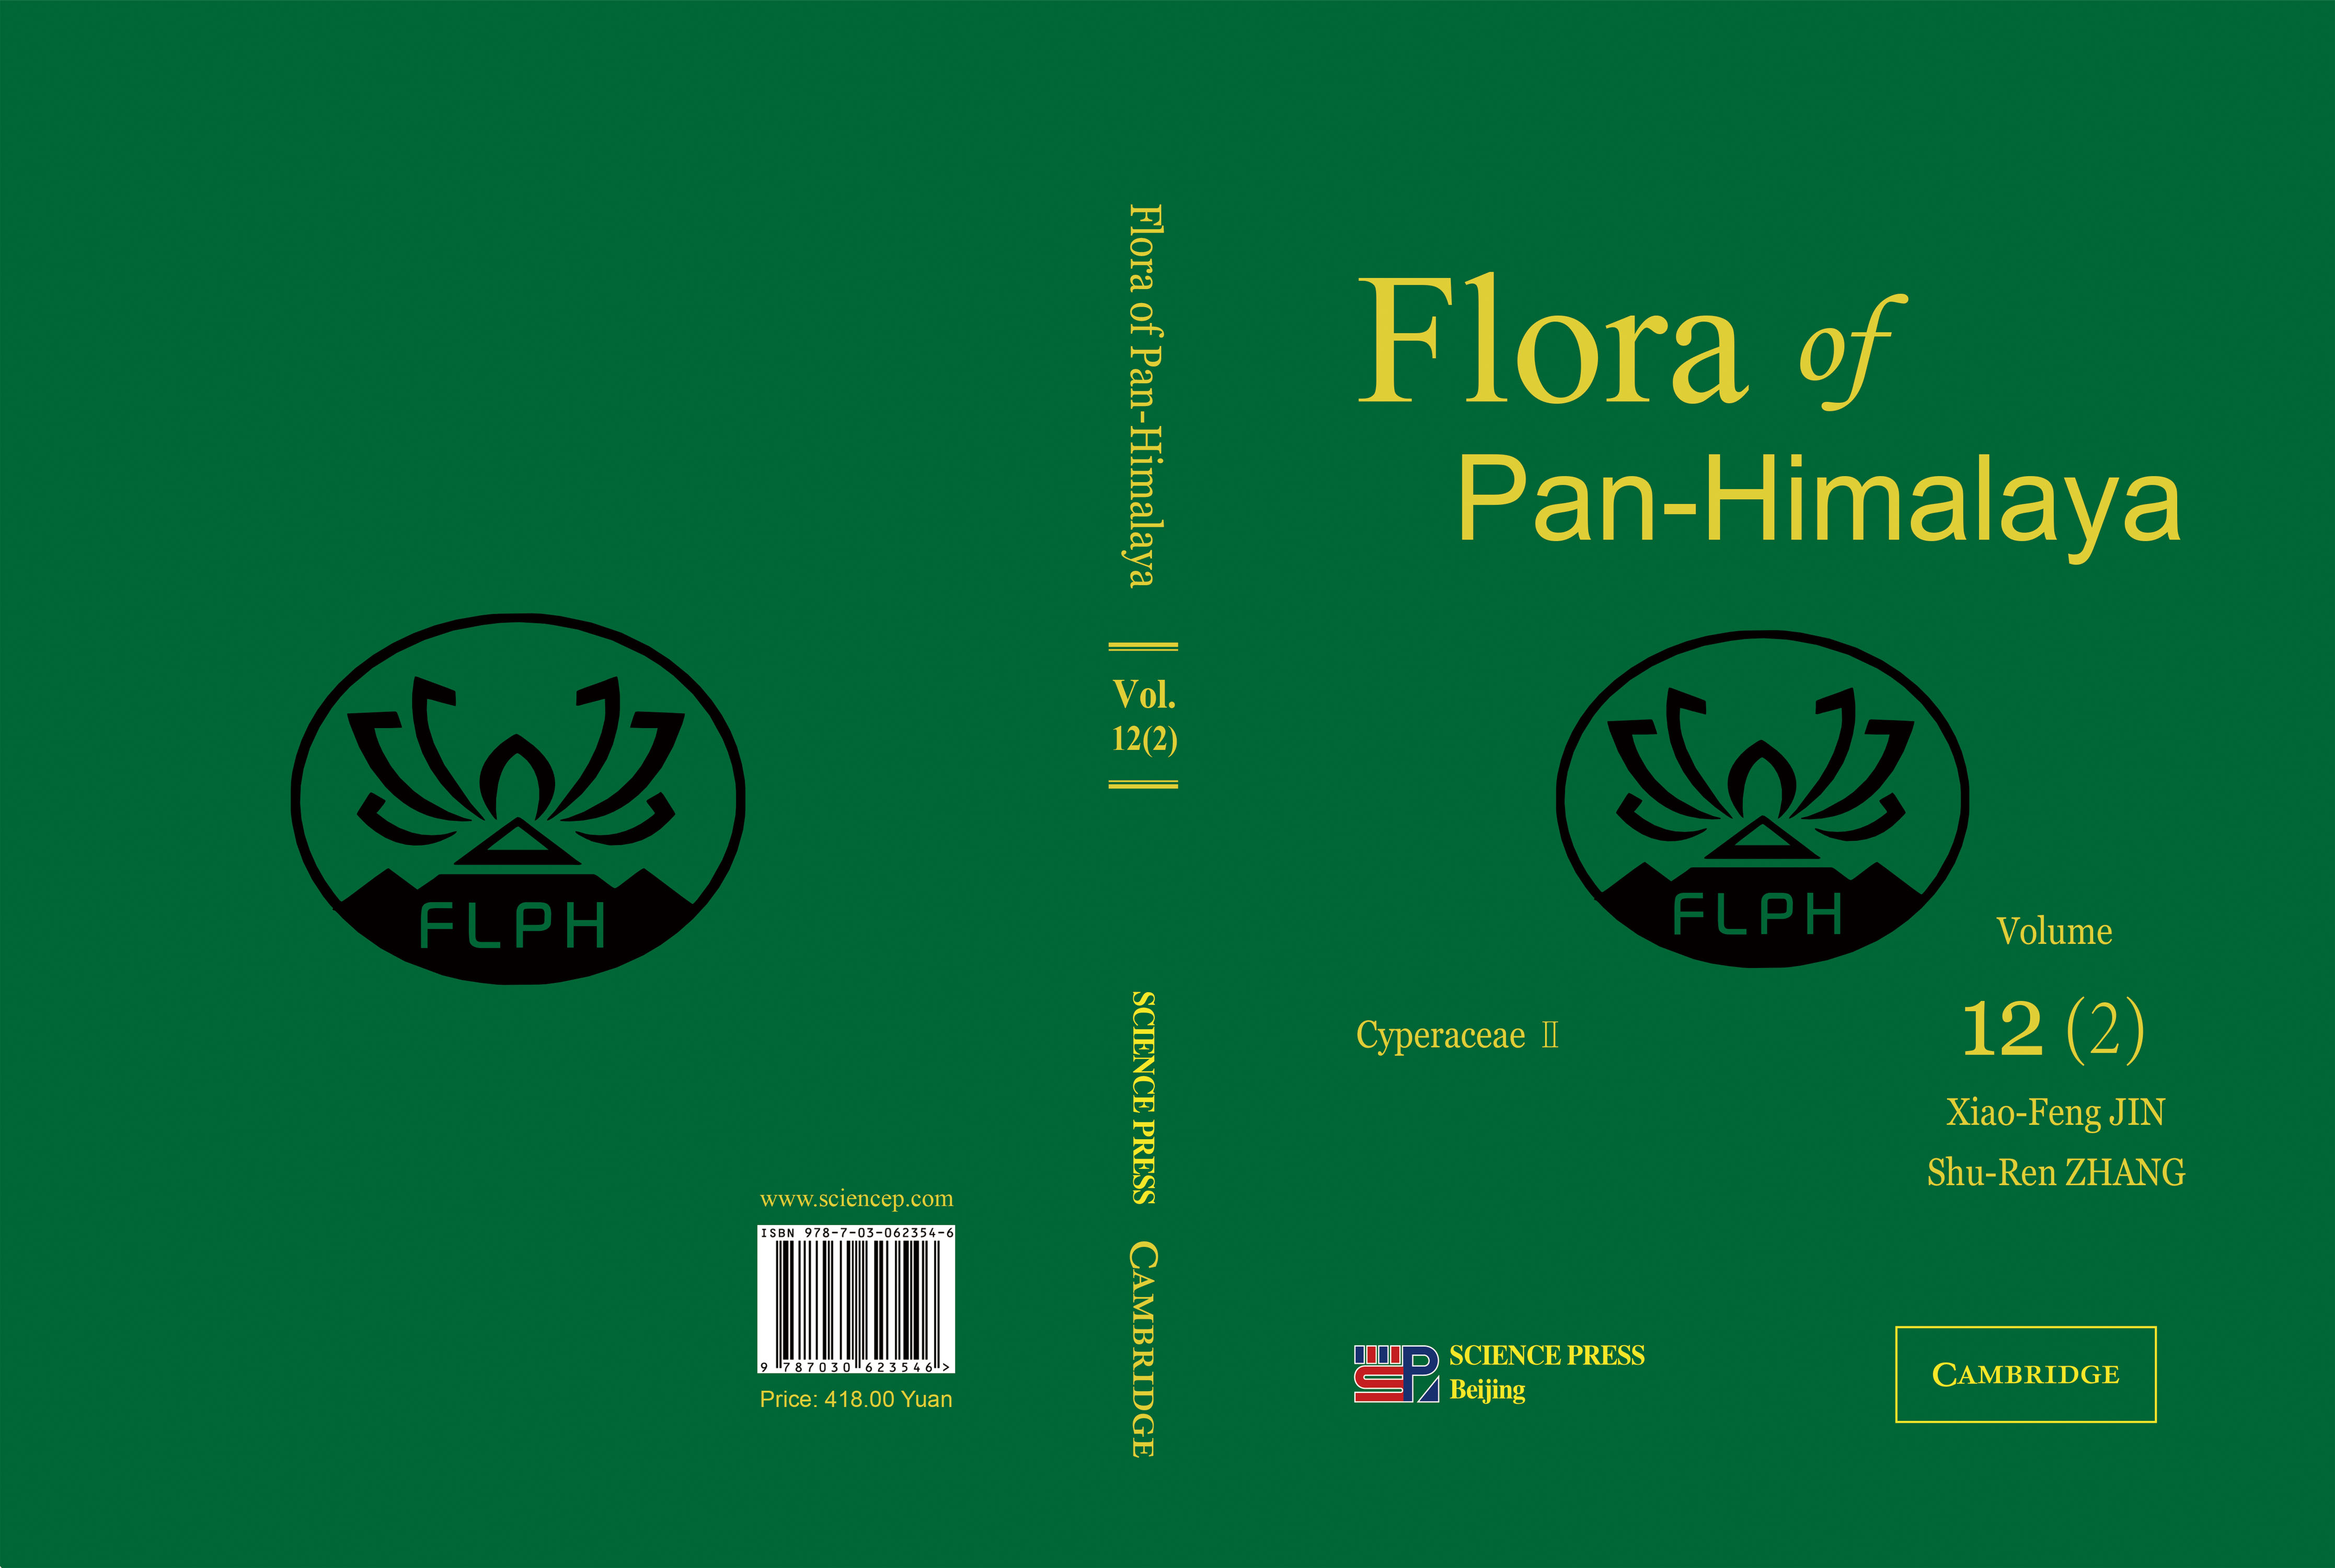 泛喜马拉雅植物志12卷2分册（英文版）